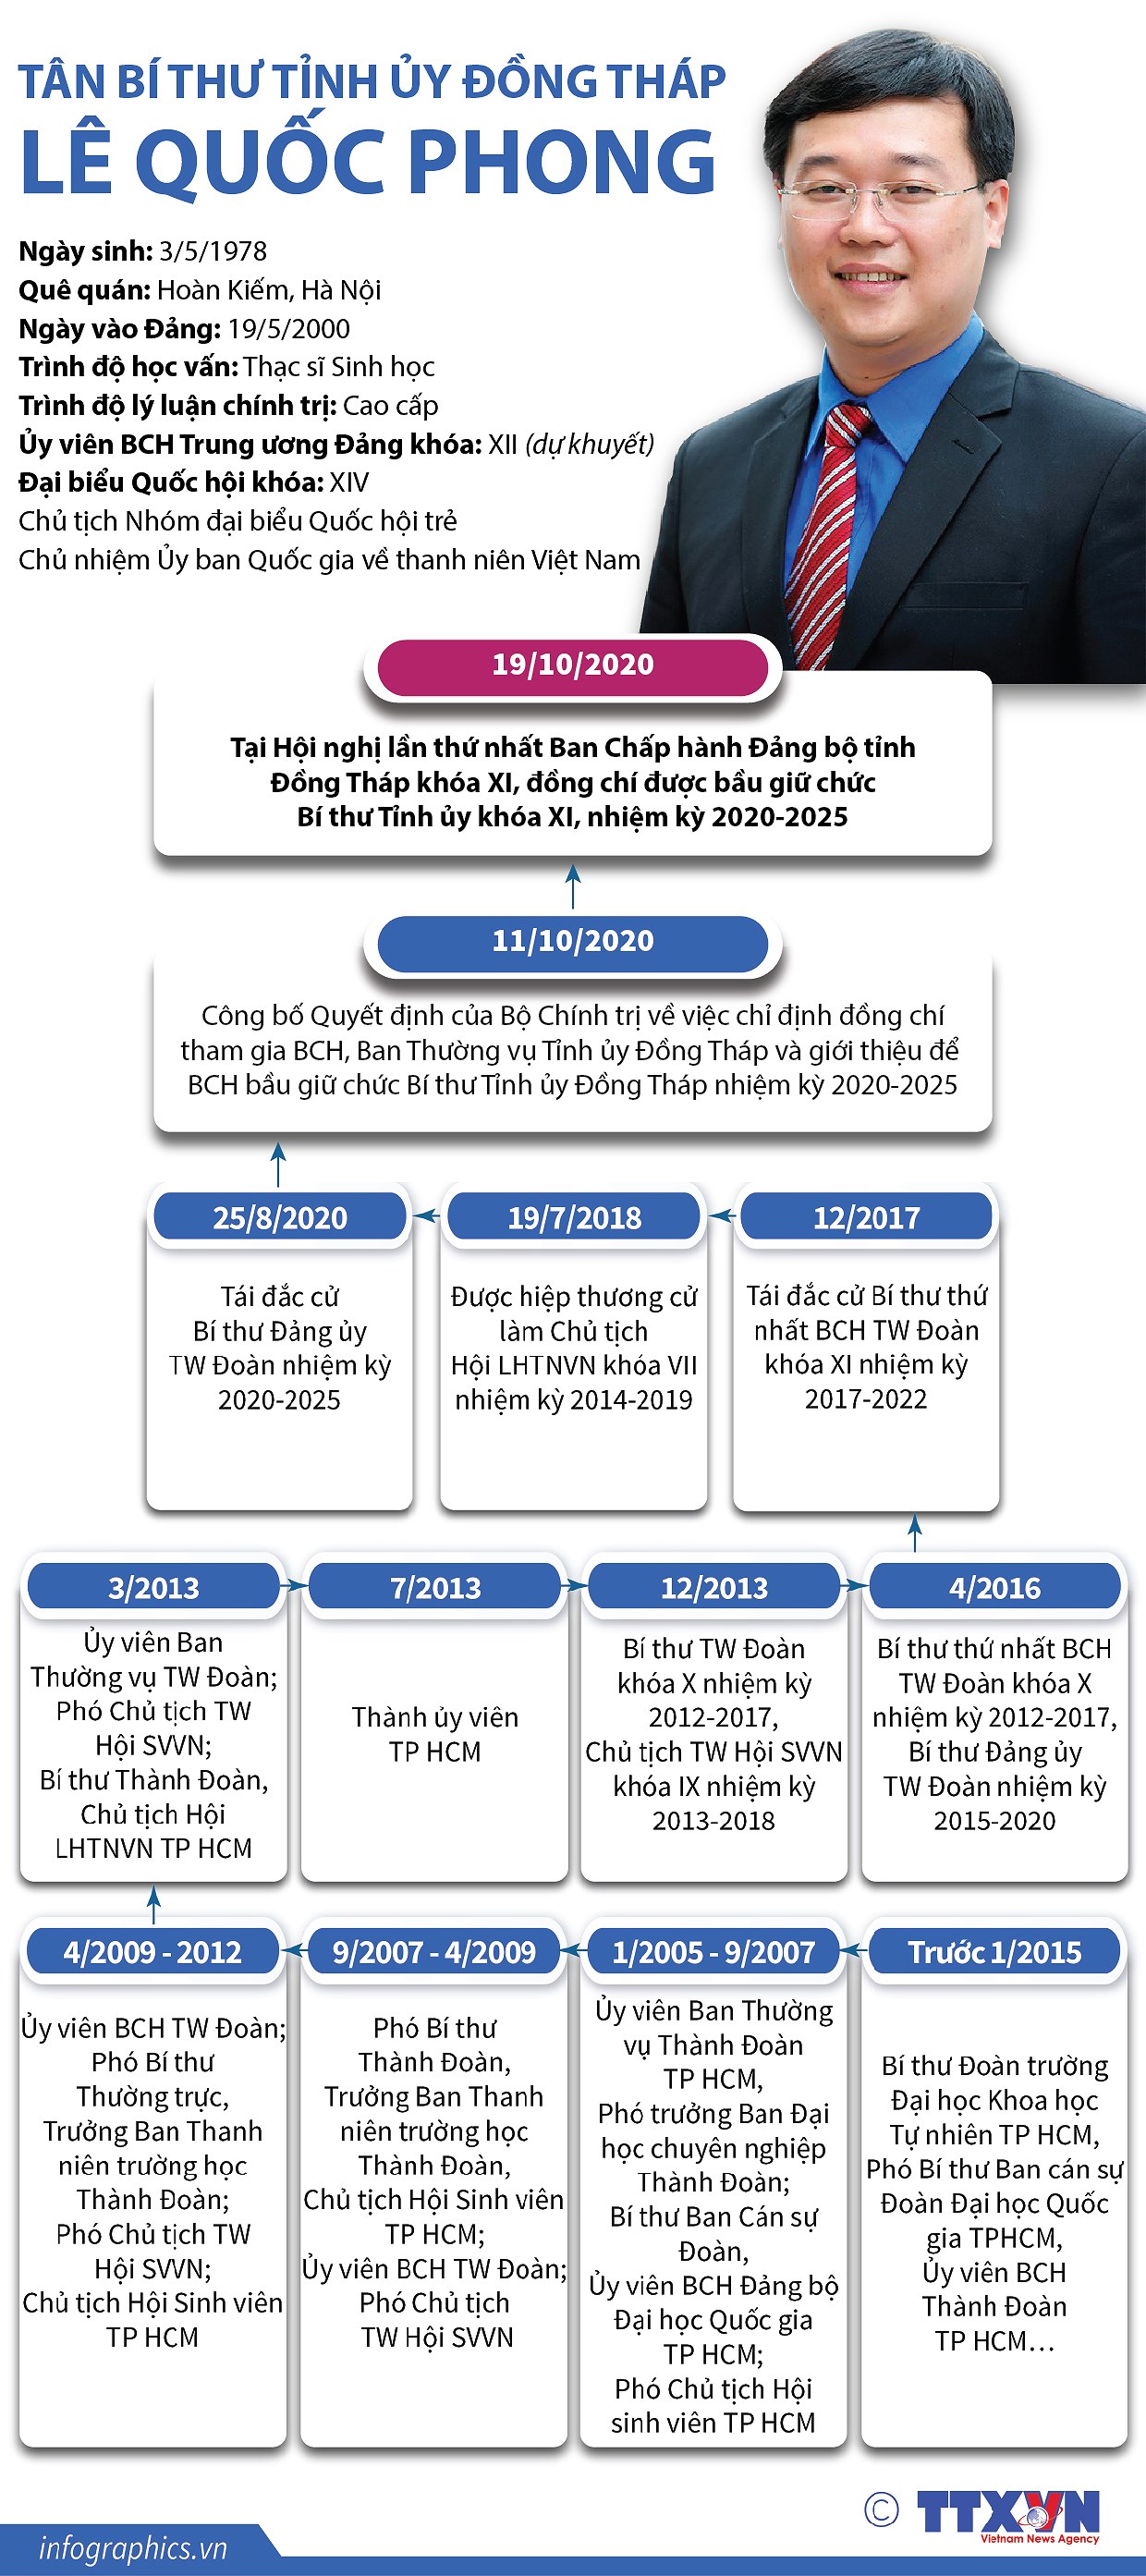 [Infographics] Tan Bi thu Tinh uy Dong Thap Le Quoc Phong hinh anh 1